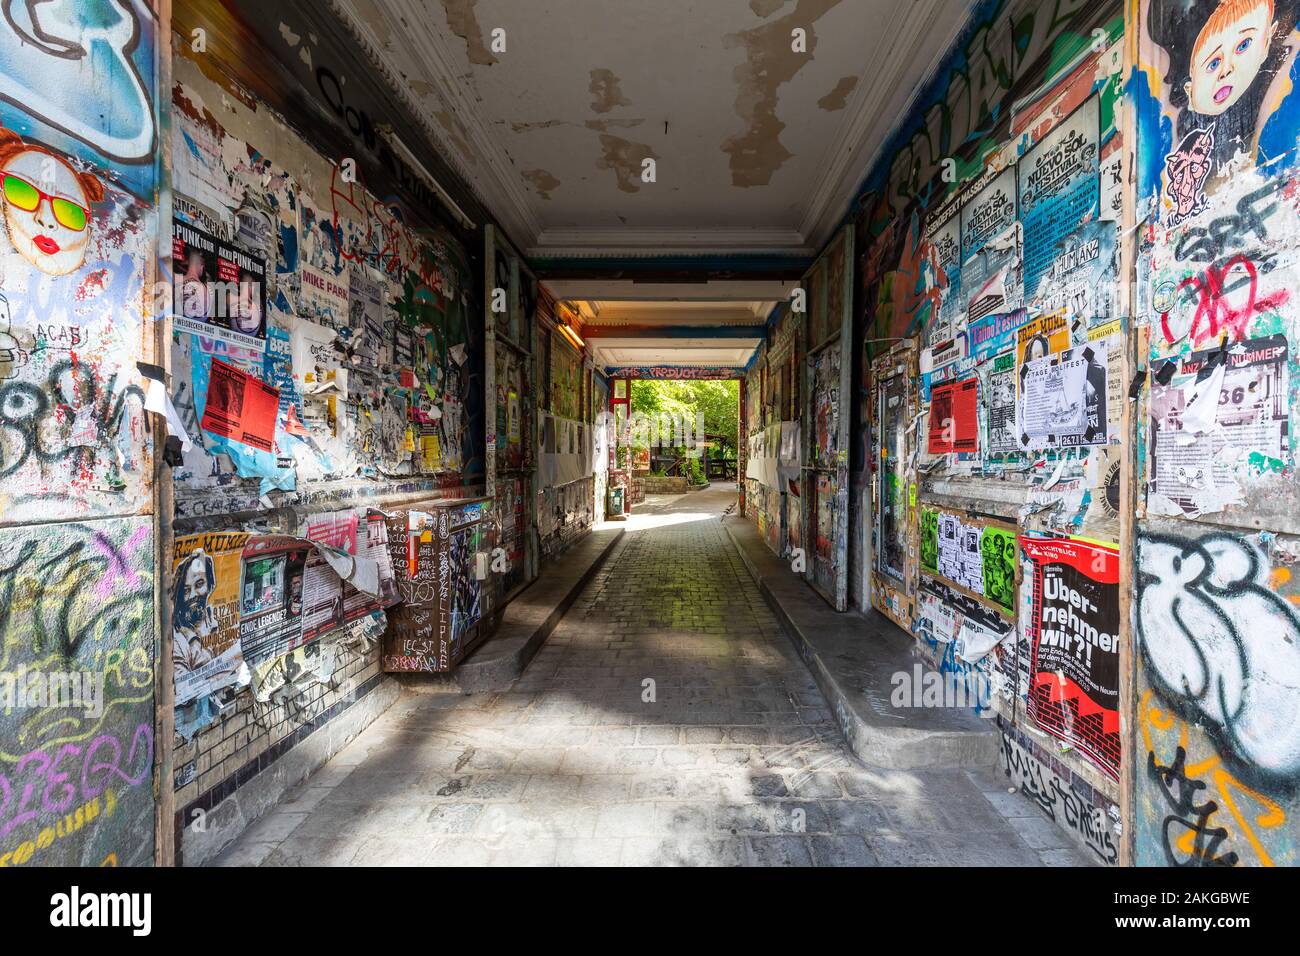 Vue symétrique d'un centre communautaire de Kreuzberg couvert graffiti et publicités colorés Banque D'Images